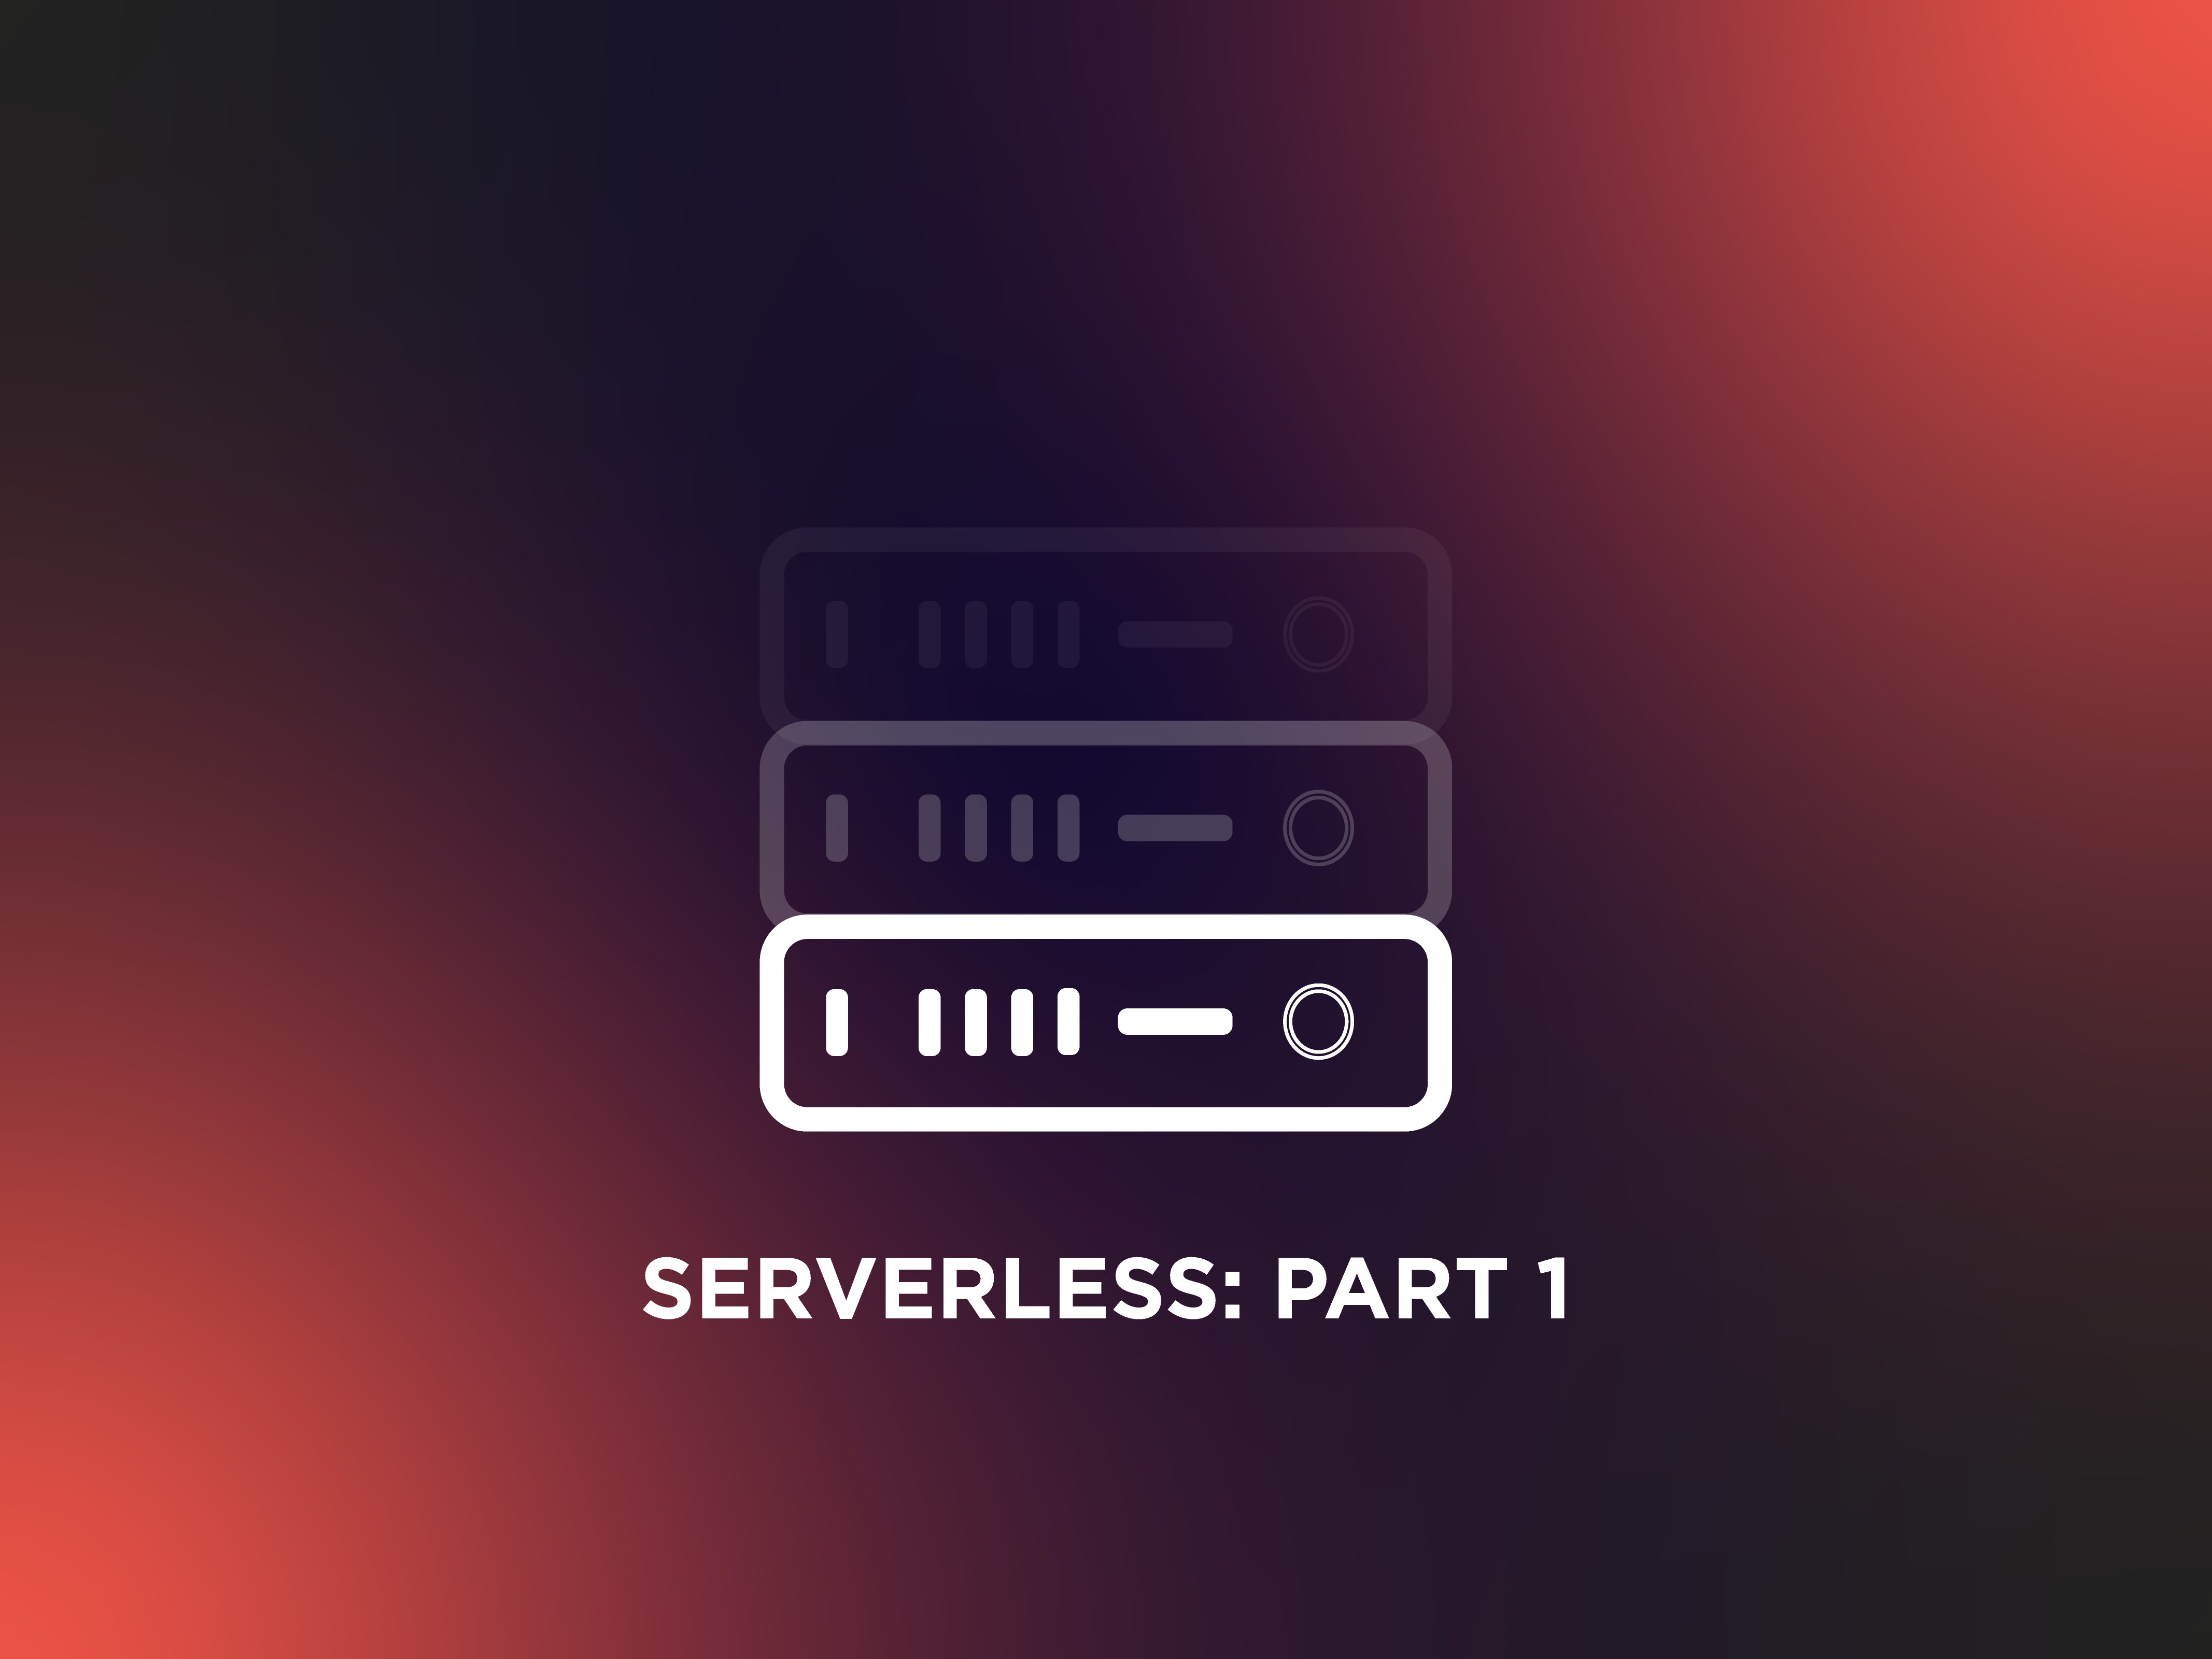 Go Serverless! Parte 1: realizziamo un’applicazione di File Sharing basata sui servizi di AWS